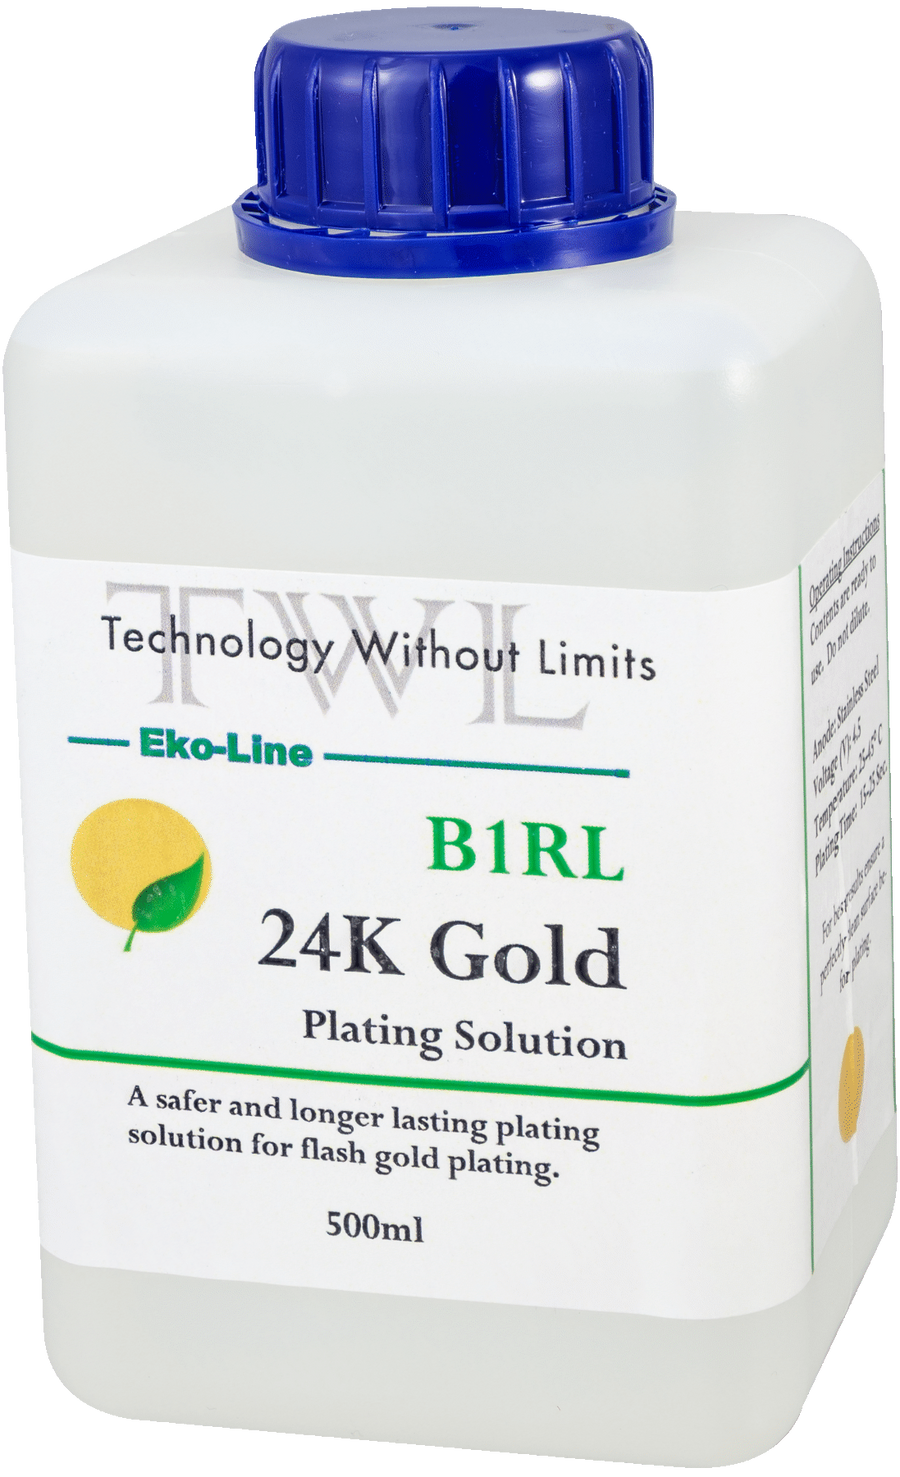 B1RL 24k Gold Plating Solution 500 ml. Eko-line